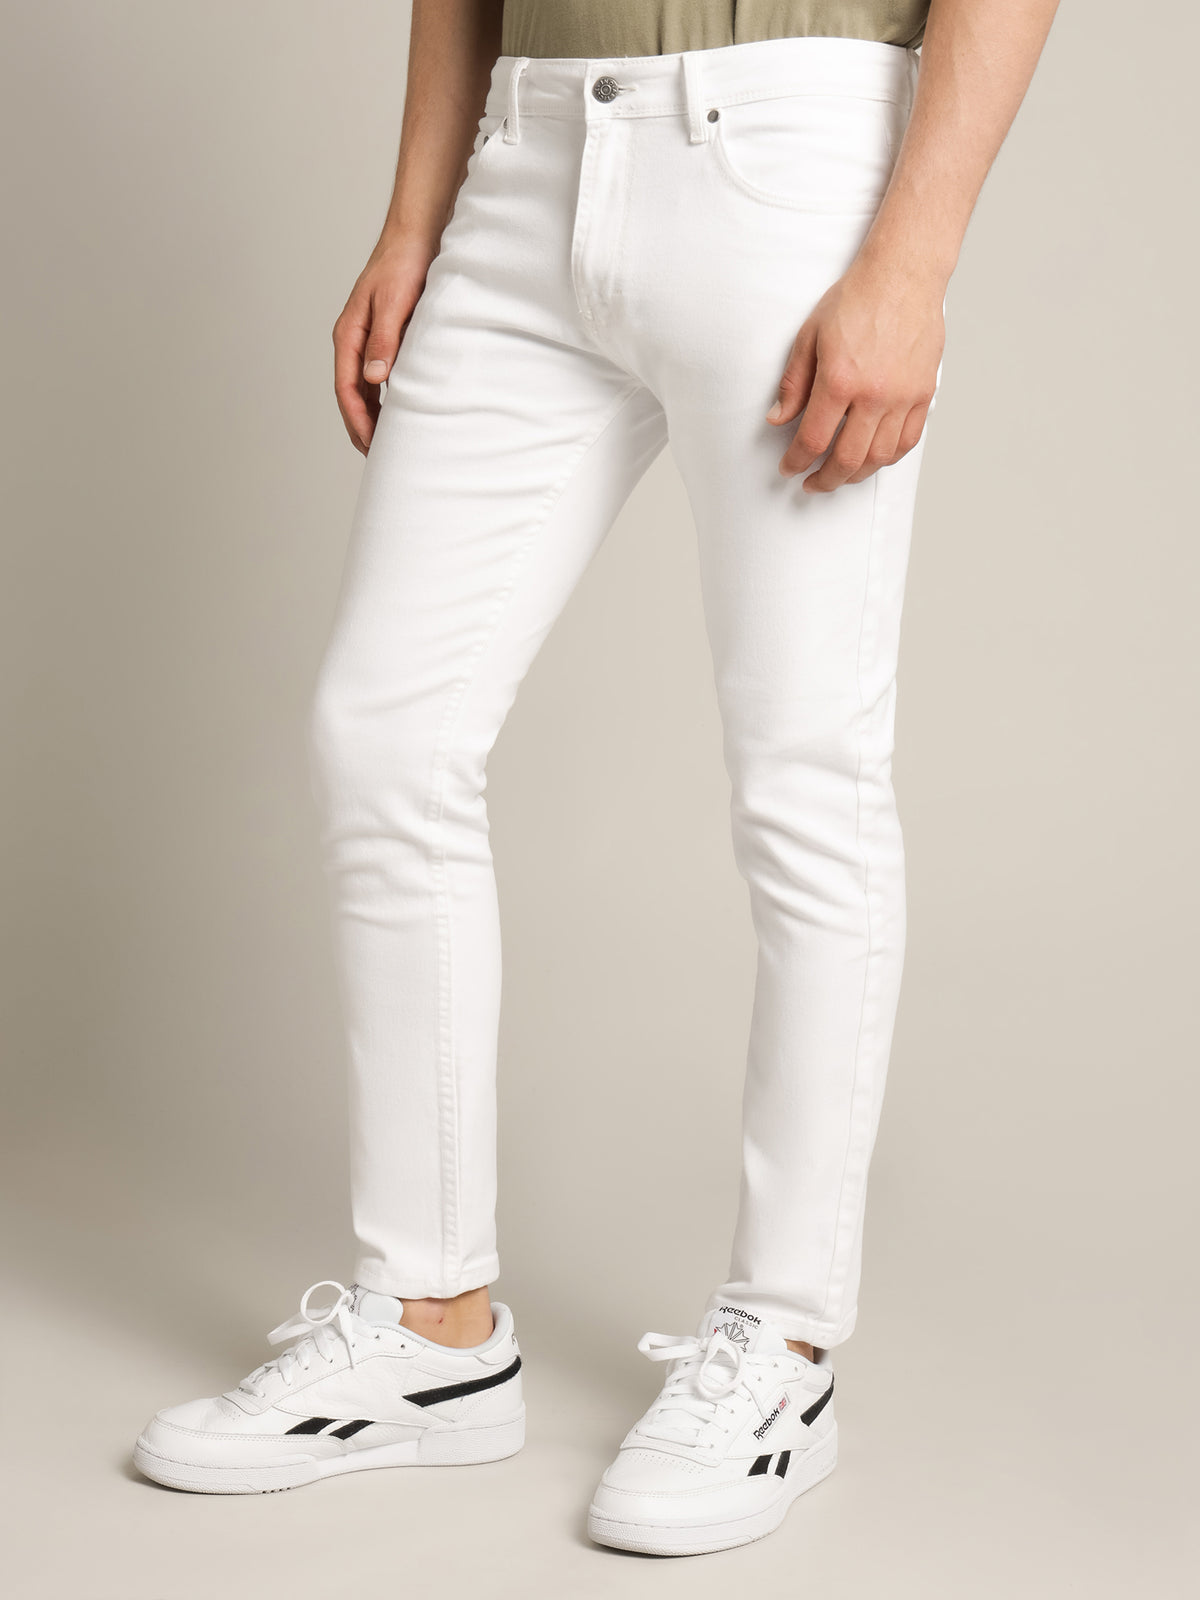 Zane Skinny Jeans in White